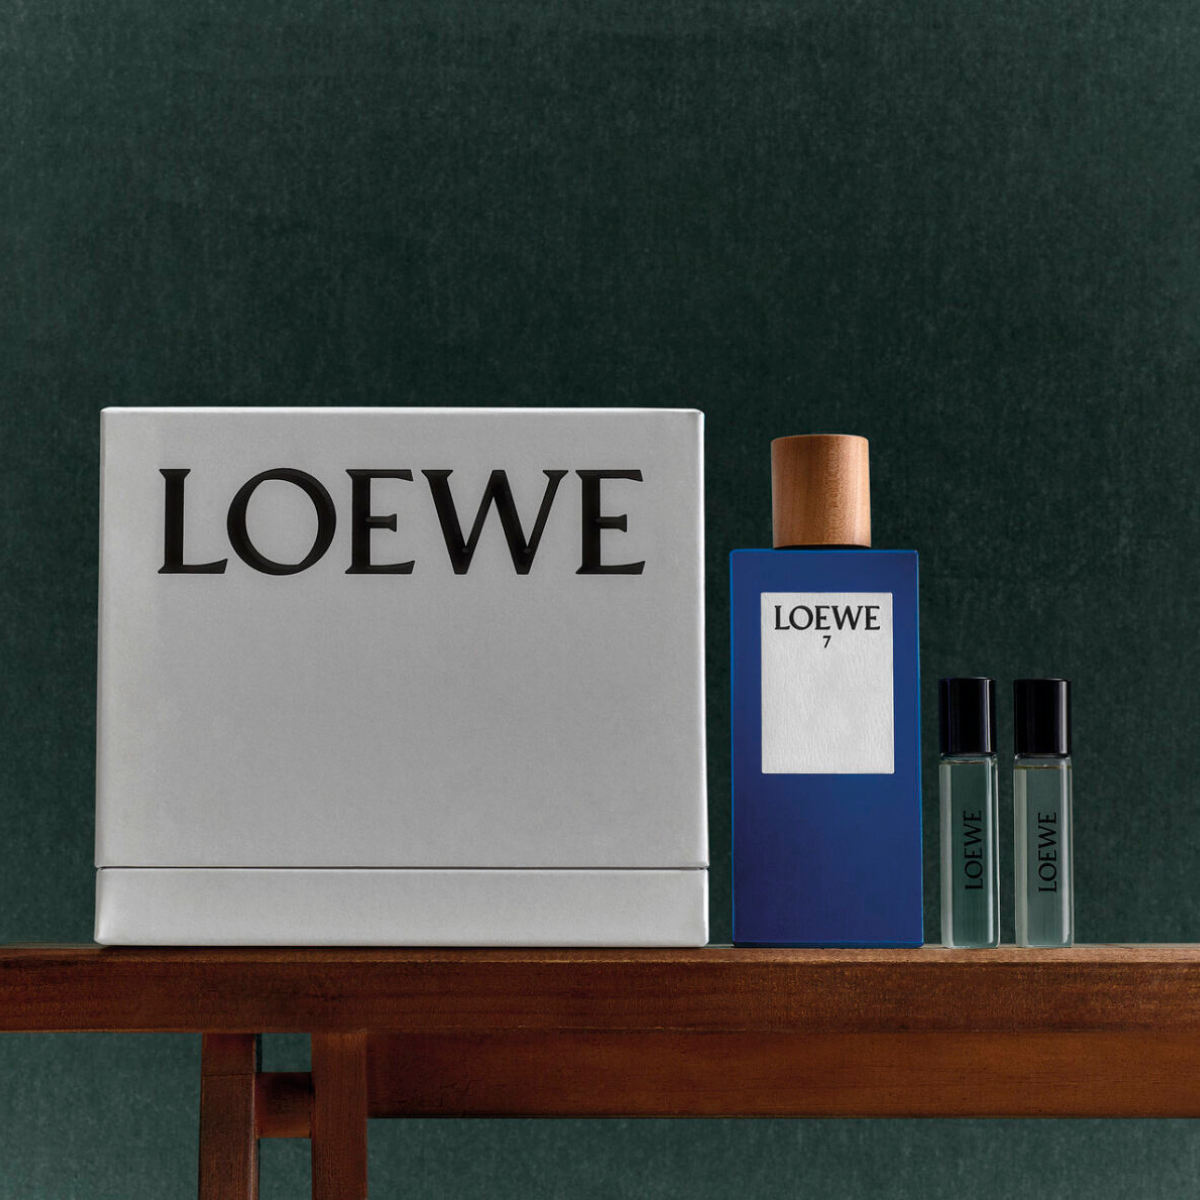 Loewe Set Loewe 7 Eau de Toilette